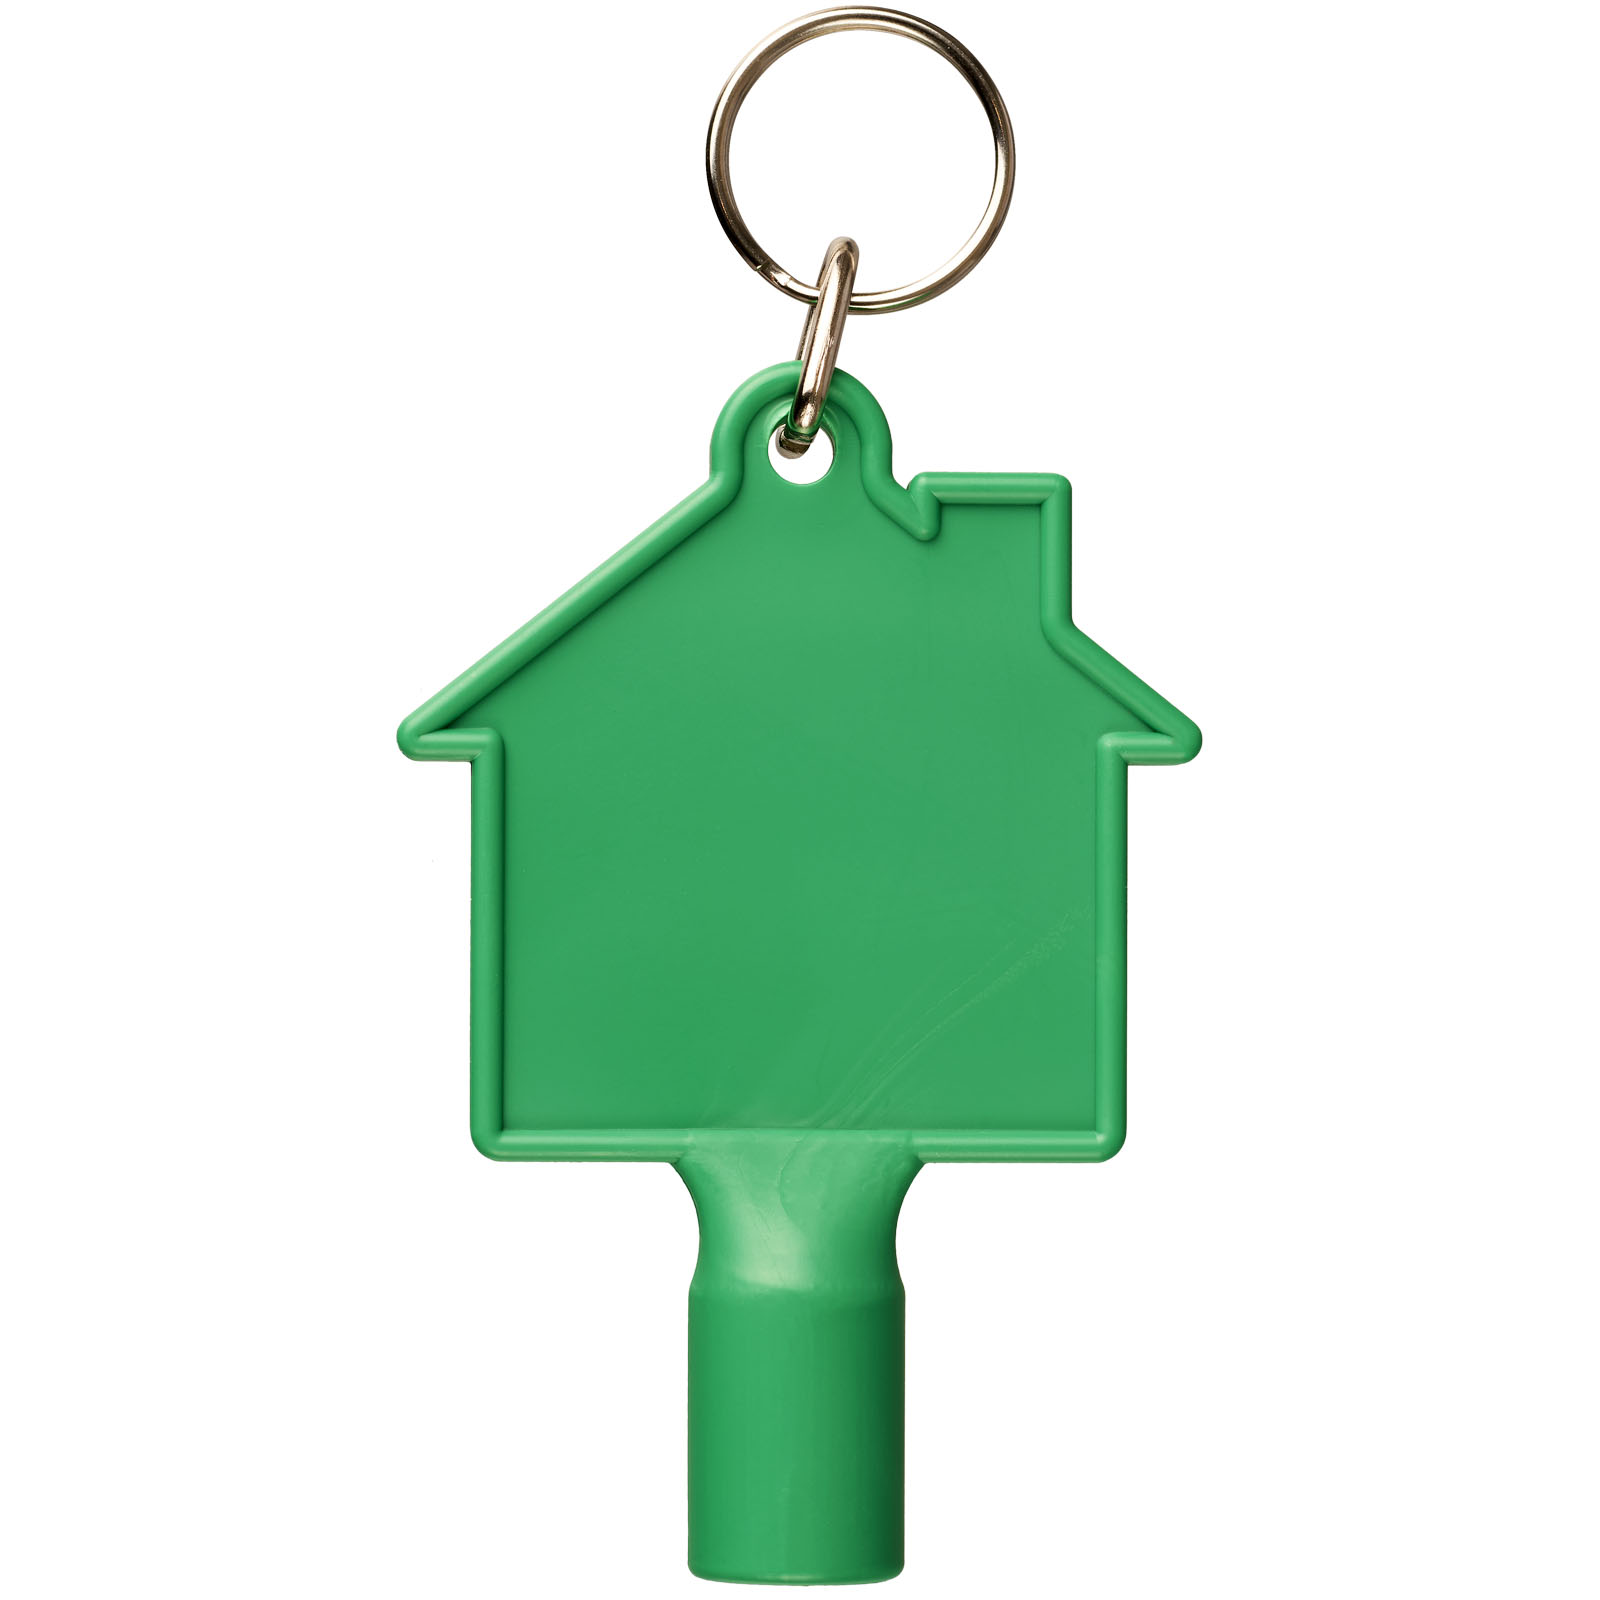 Advertising Keychains & Keyrings - Maximilian house-shaped utility key with keychain - 1